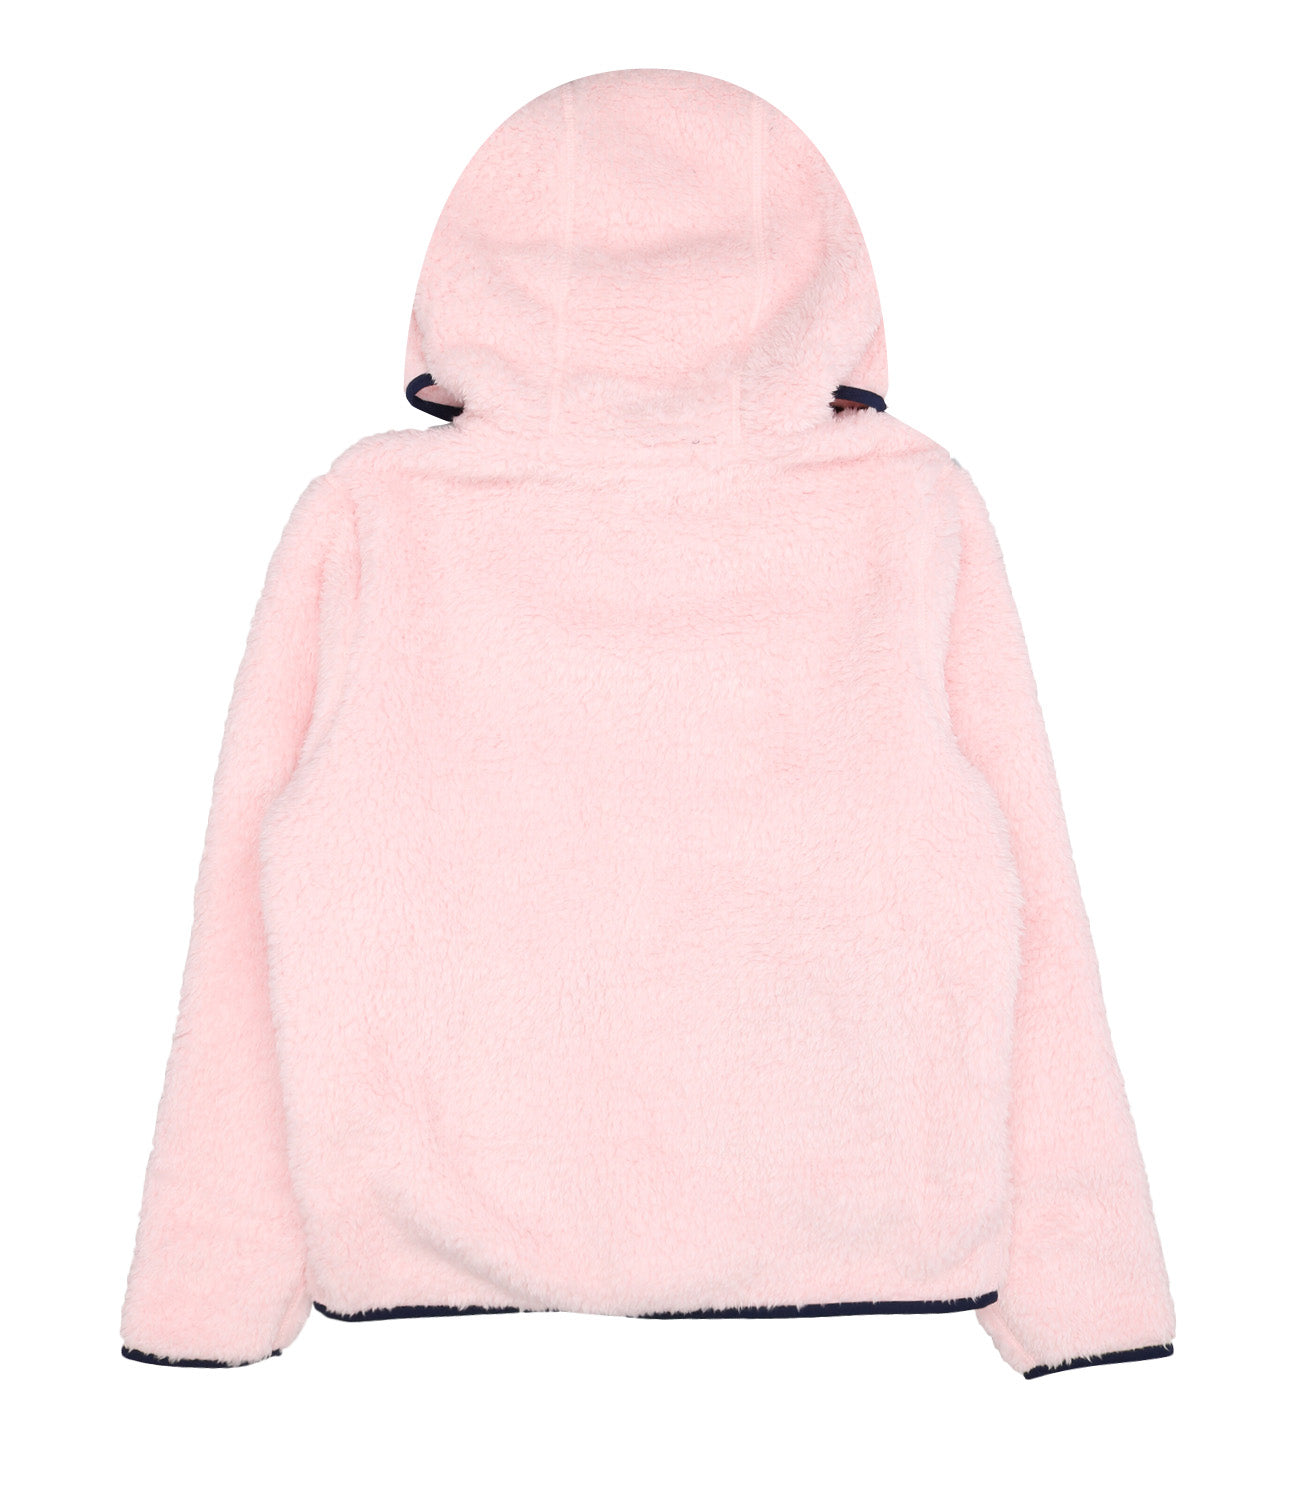 Ralph Lauren Childrenswear | Sweatshirt Pink